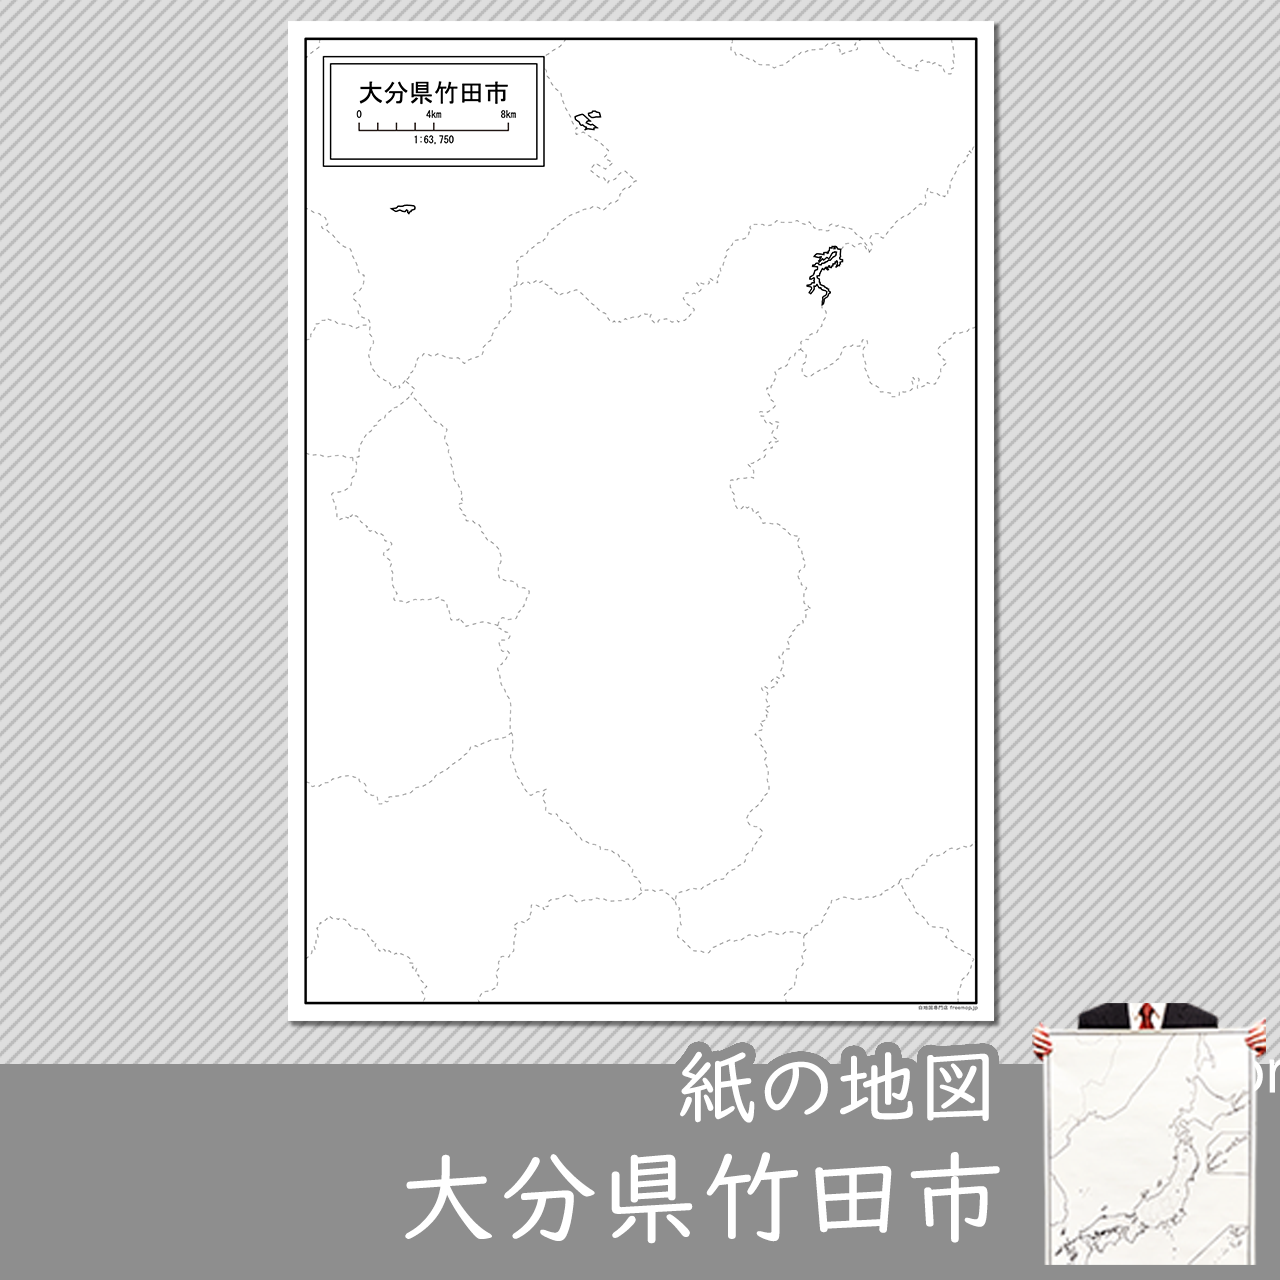 竹田市の紙の白地図のサムネイル